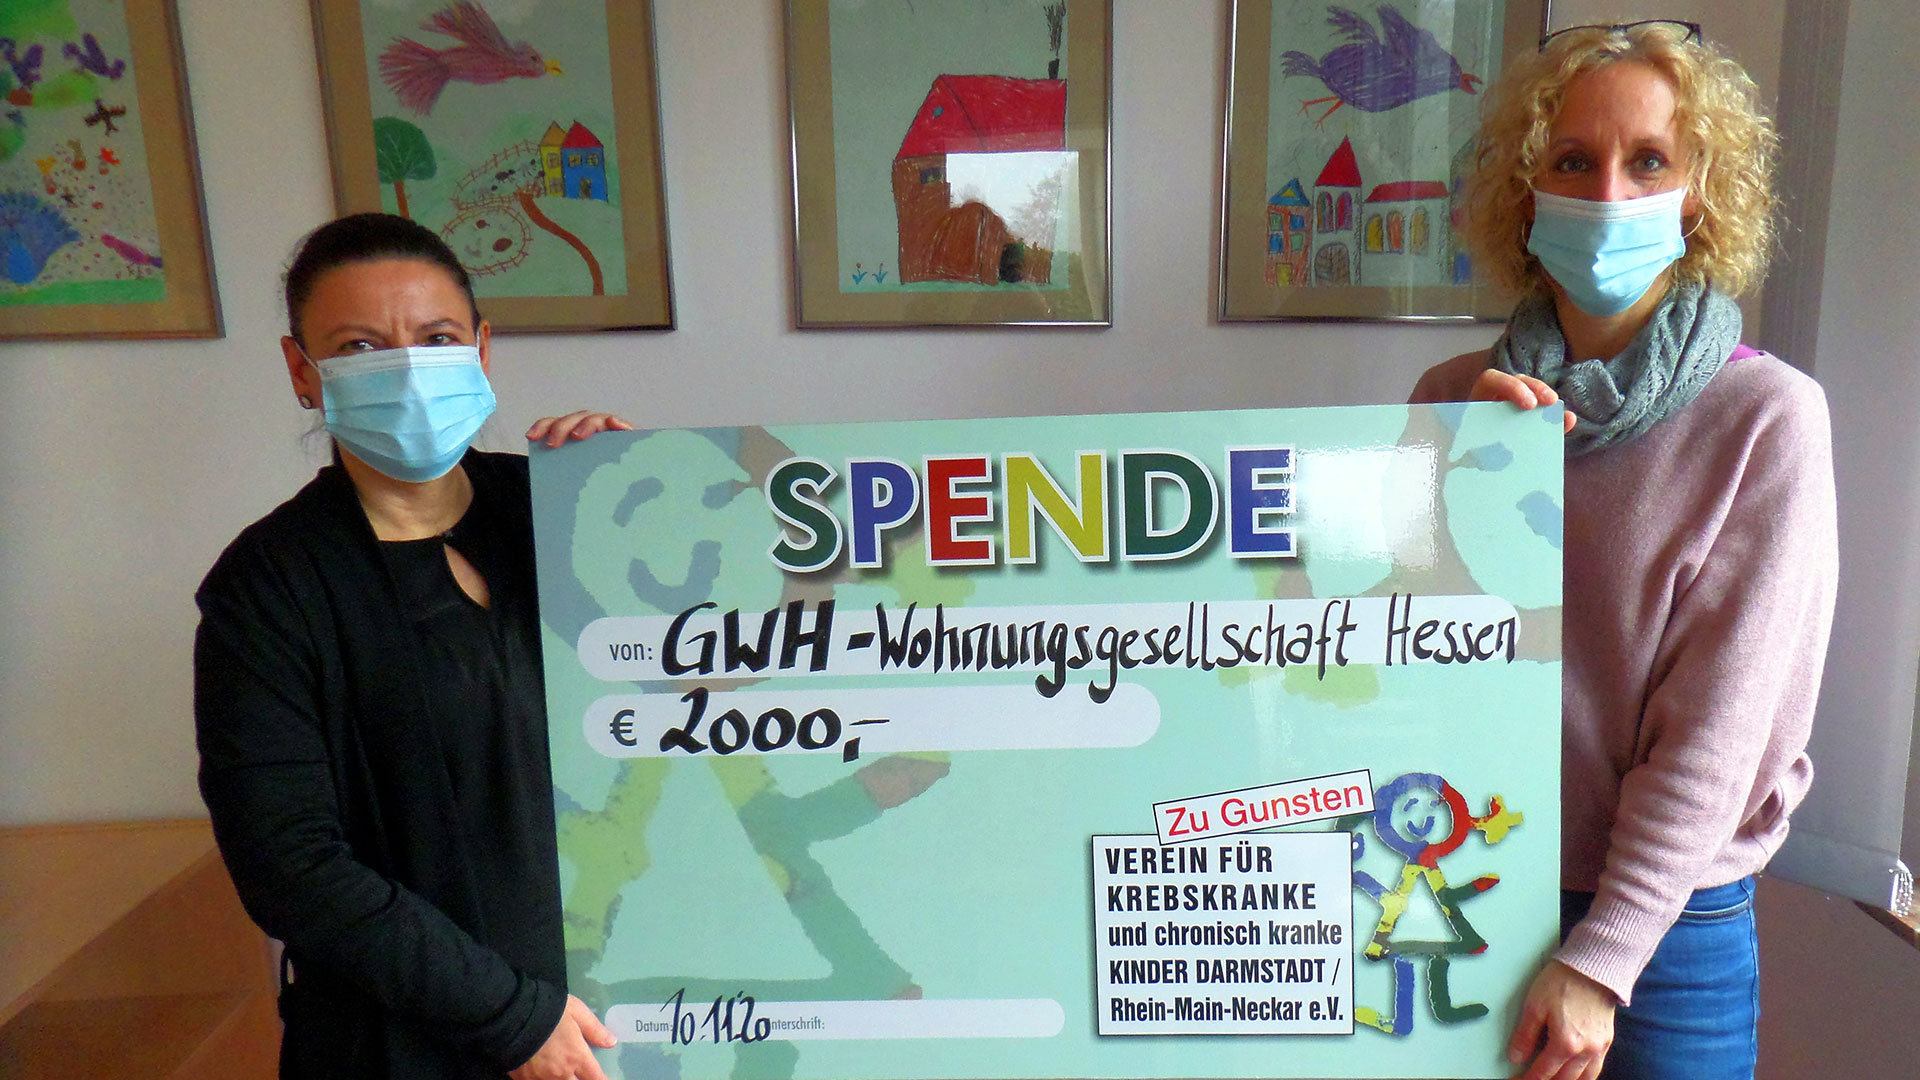 GWH unterstützt den Verein für krebskranke und chronisch kranke Kinder in Darmstadt mit einer Spende von 2000 Euro